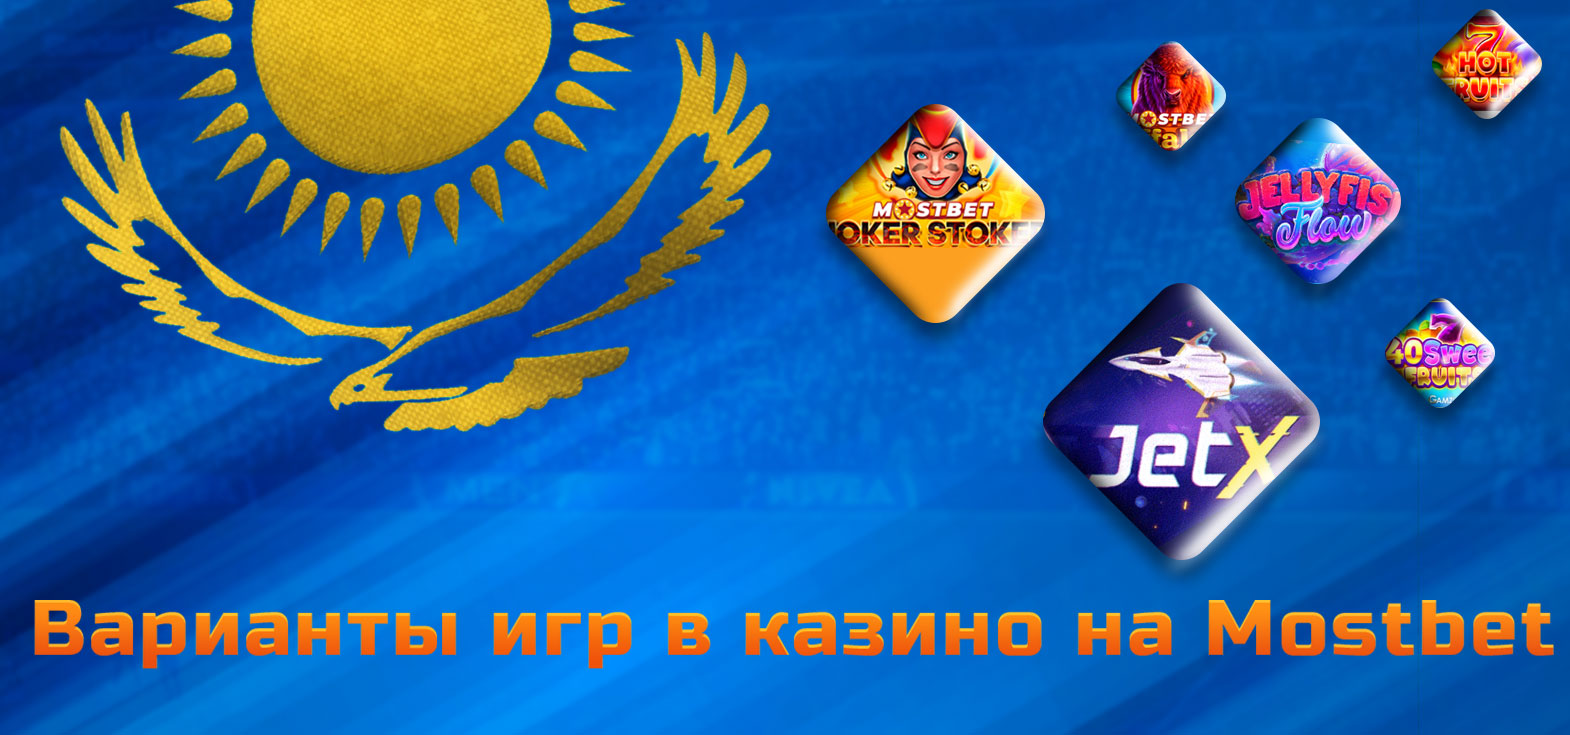 Популярные провайдеры казино игр, которые доступны в казино Mostbet для игроков из Казахстана.